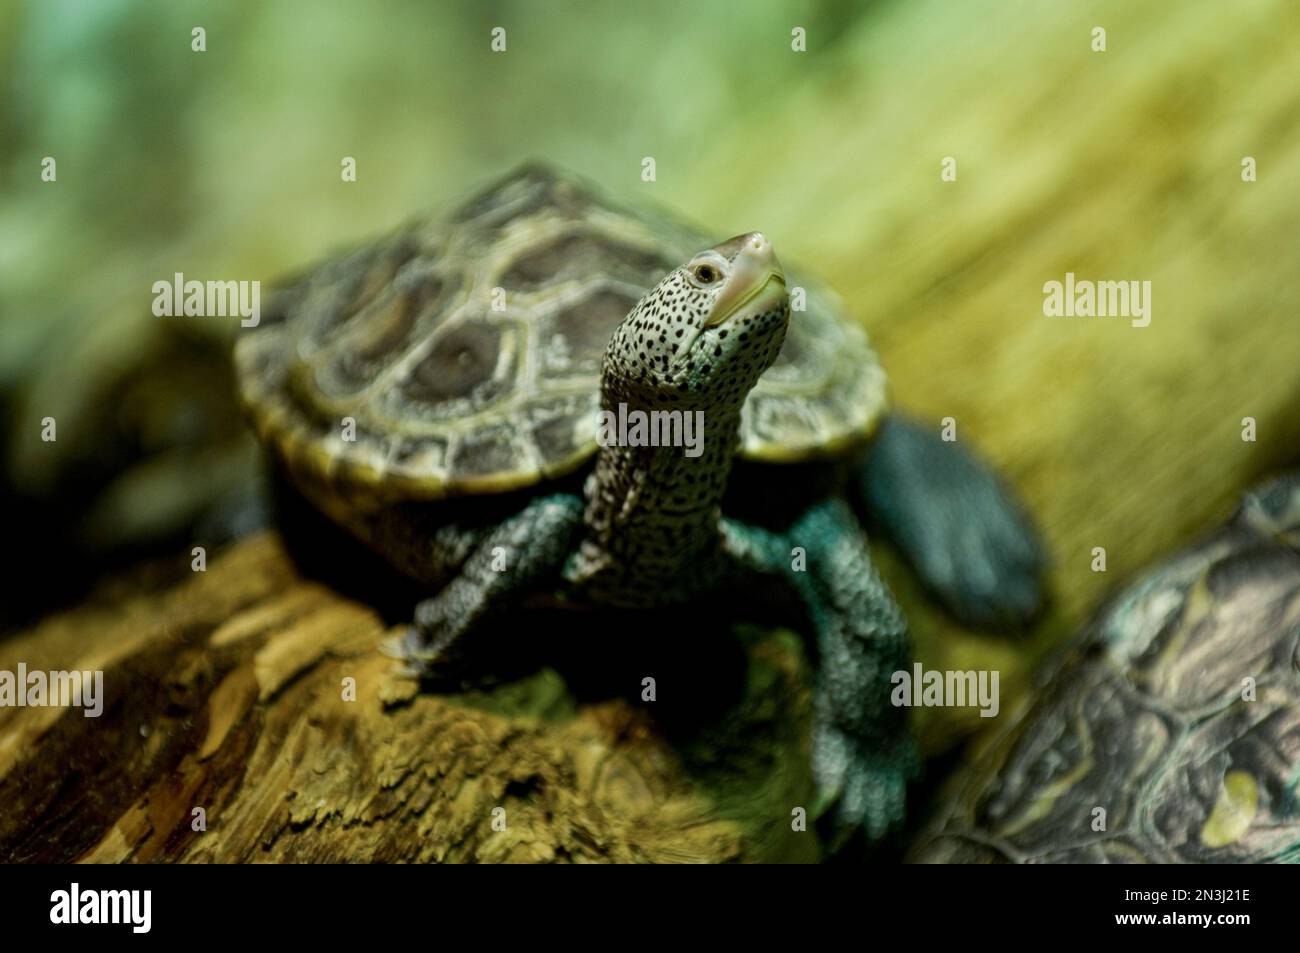 Ritratto di una tartaruga cartografica dell'Alabama (Graptemys pulchra) in uno zoo; Denver, Colorado, Stati Uniti d'America Foto Stock